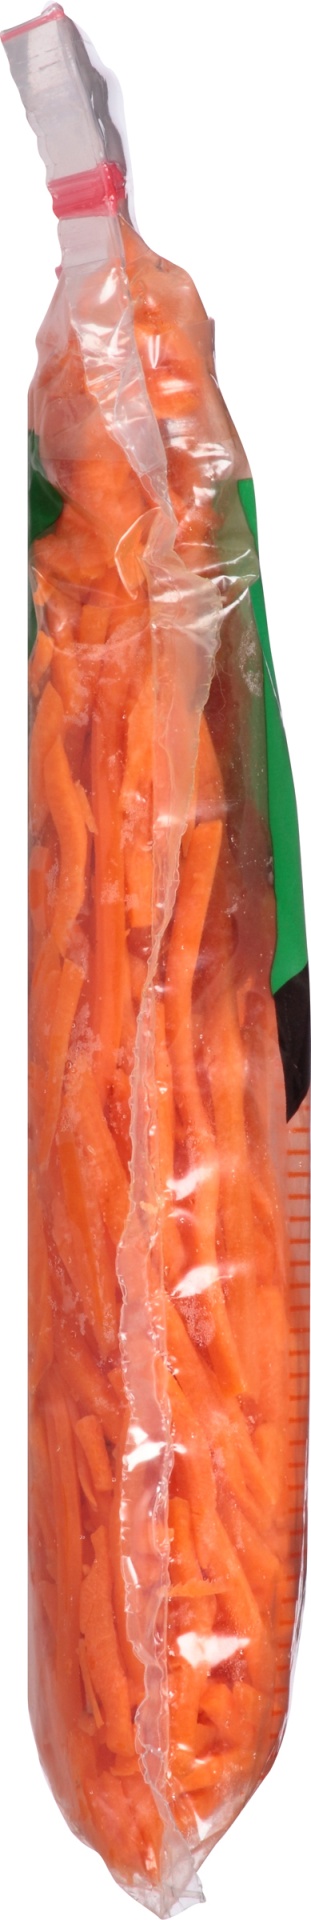 slide 2 of 6, Grimmway Farm Carrot Shredded, 10 oz